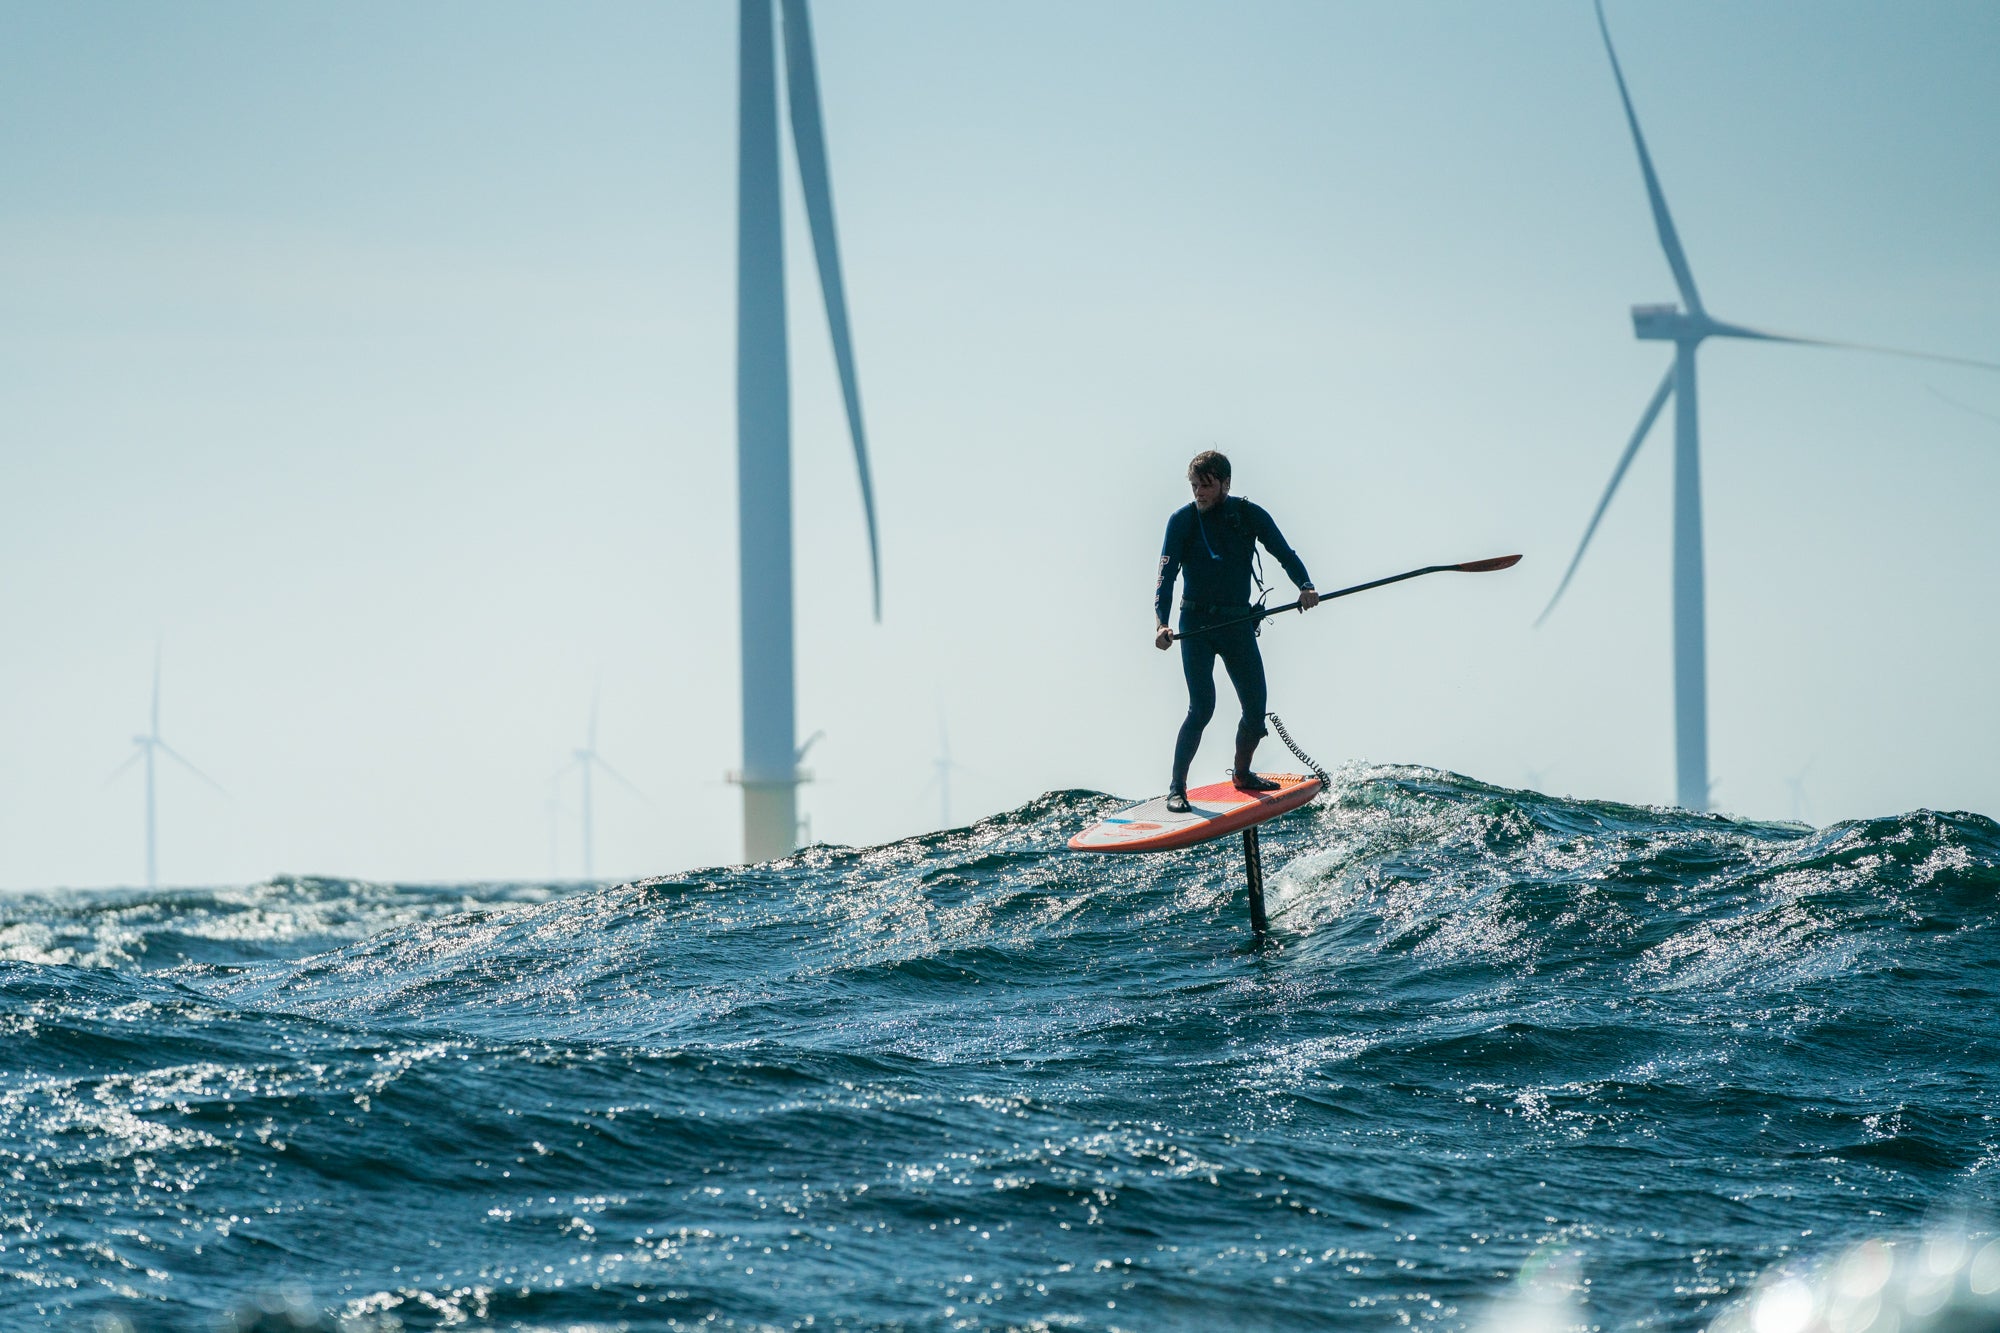 Dramatisk afslutning på dansk surfers togt over Kattegat